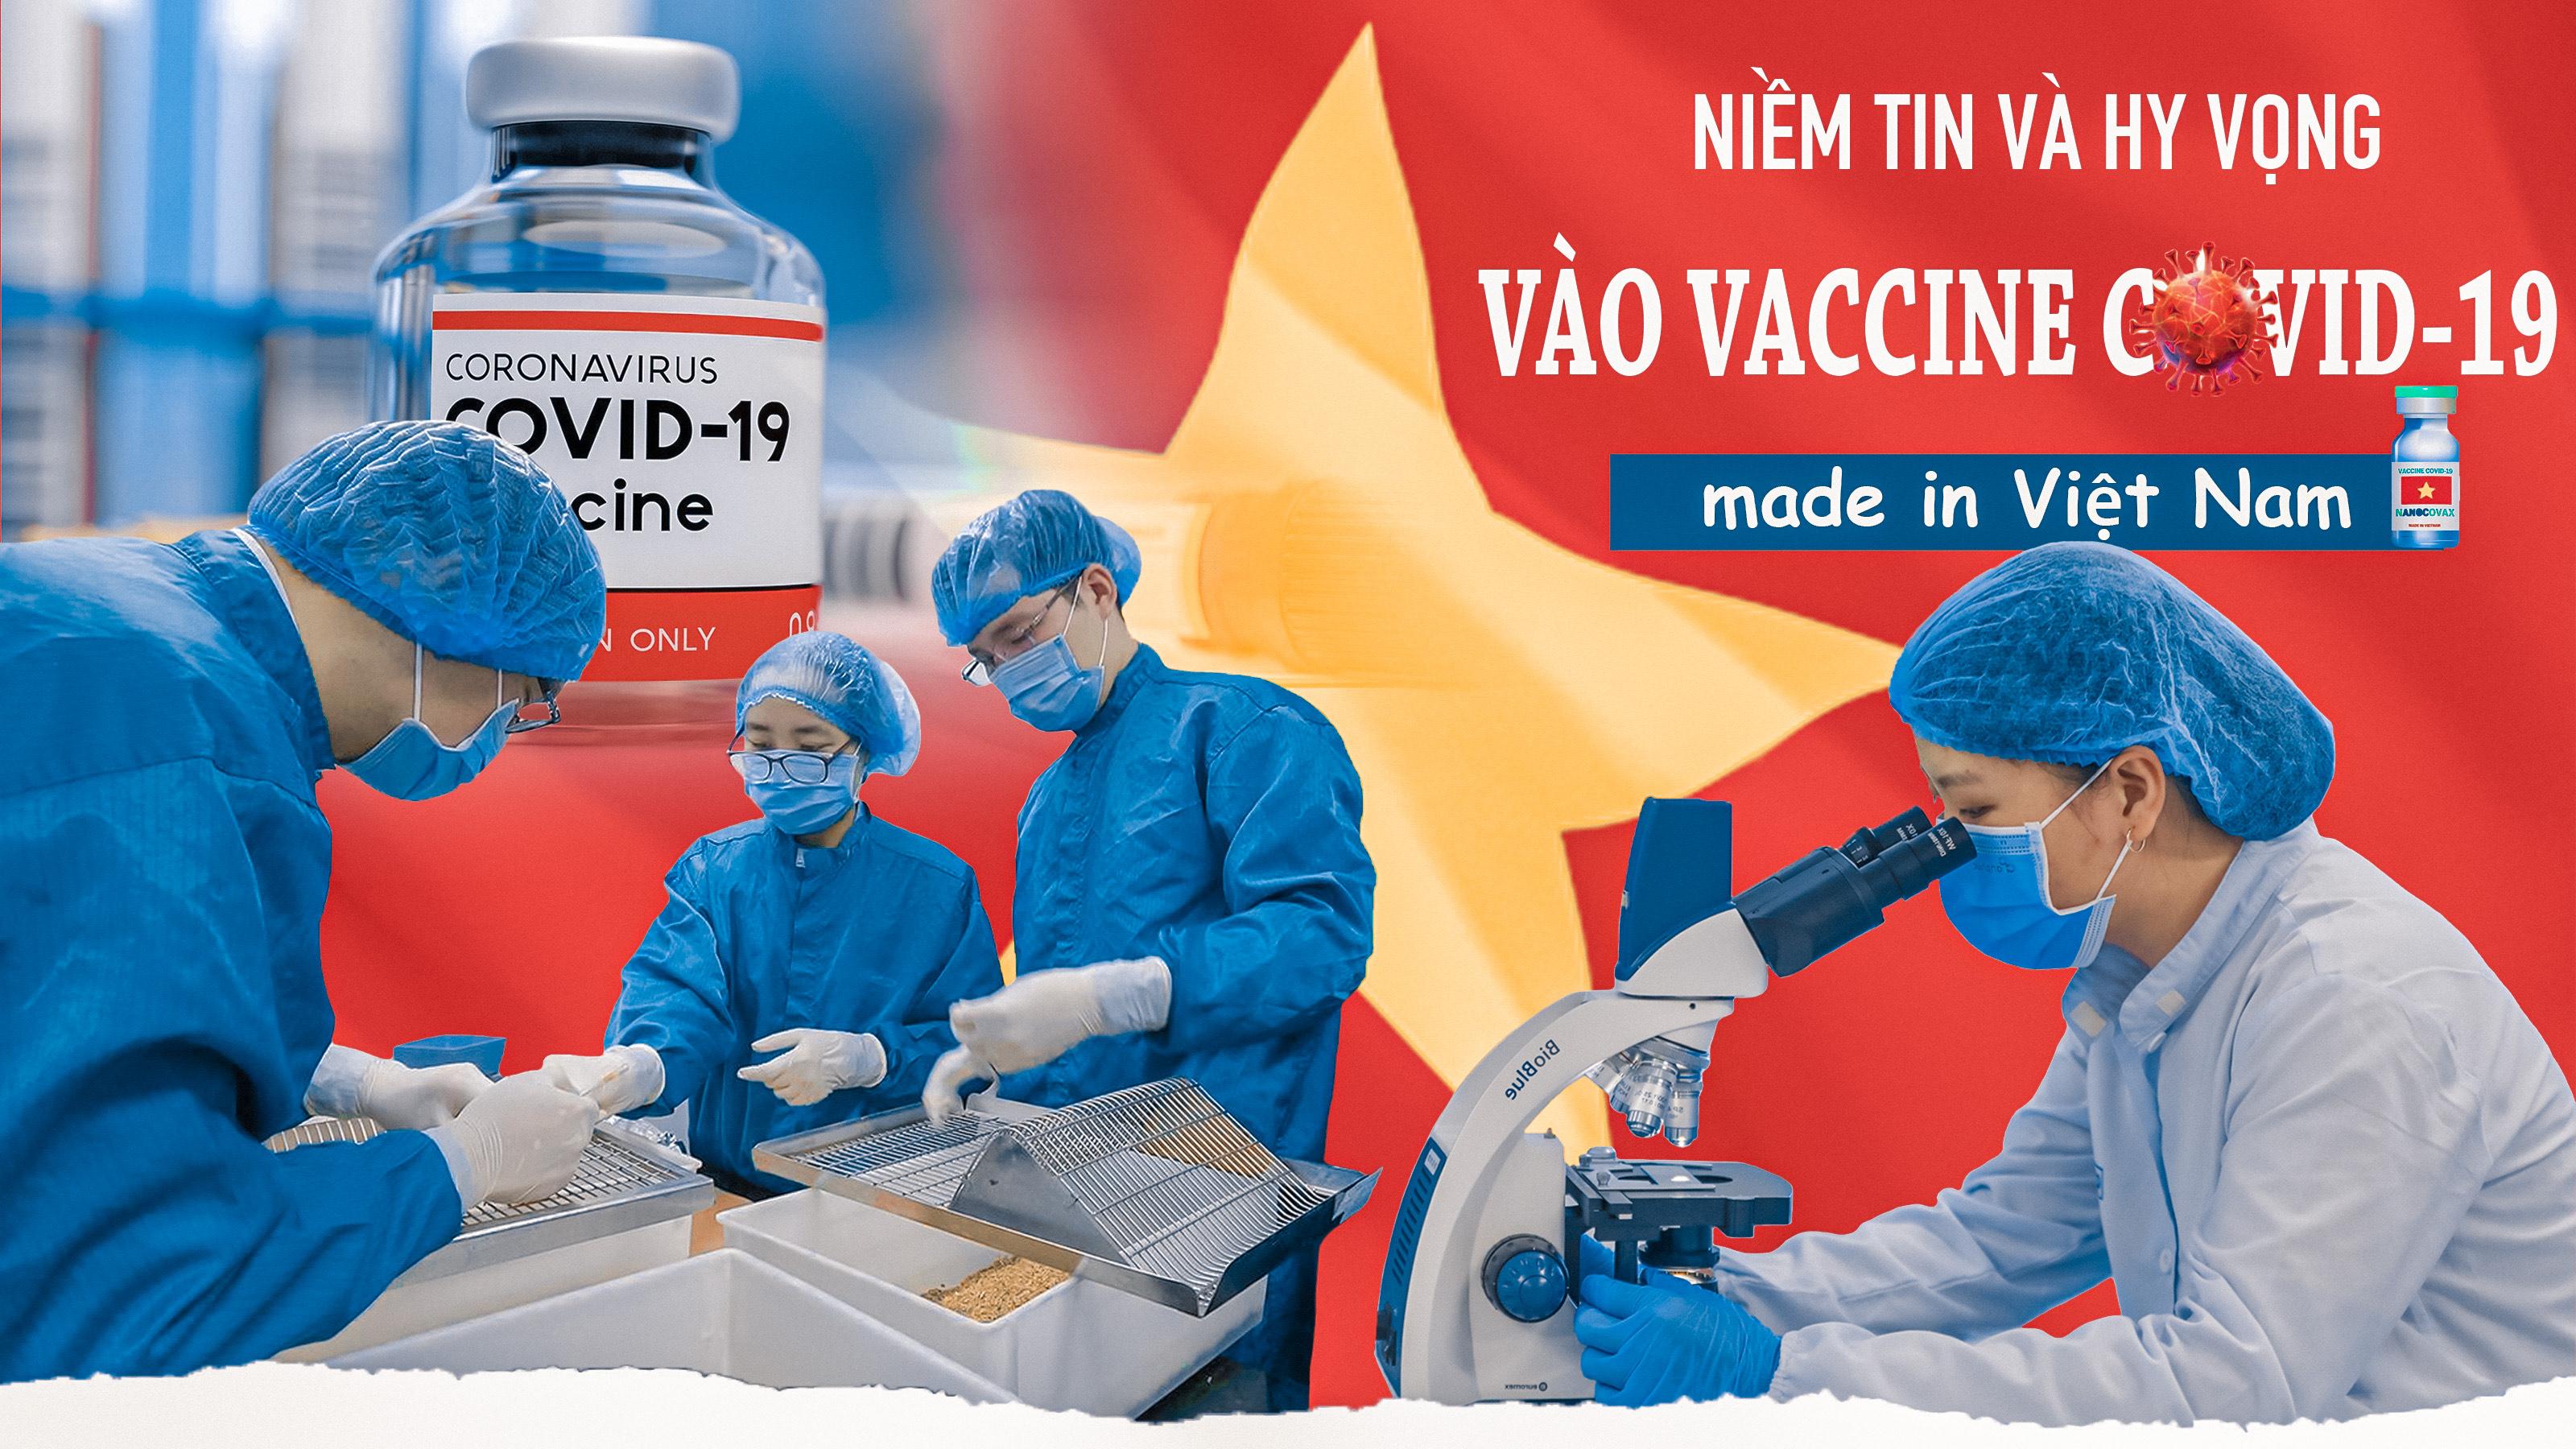 Niềm tin và hy vọng vào vaccine COVID-19 'made in Việt Nam'